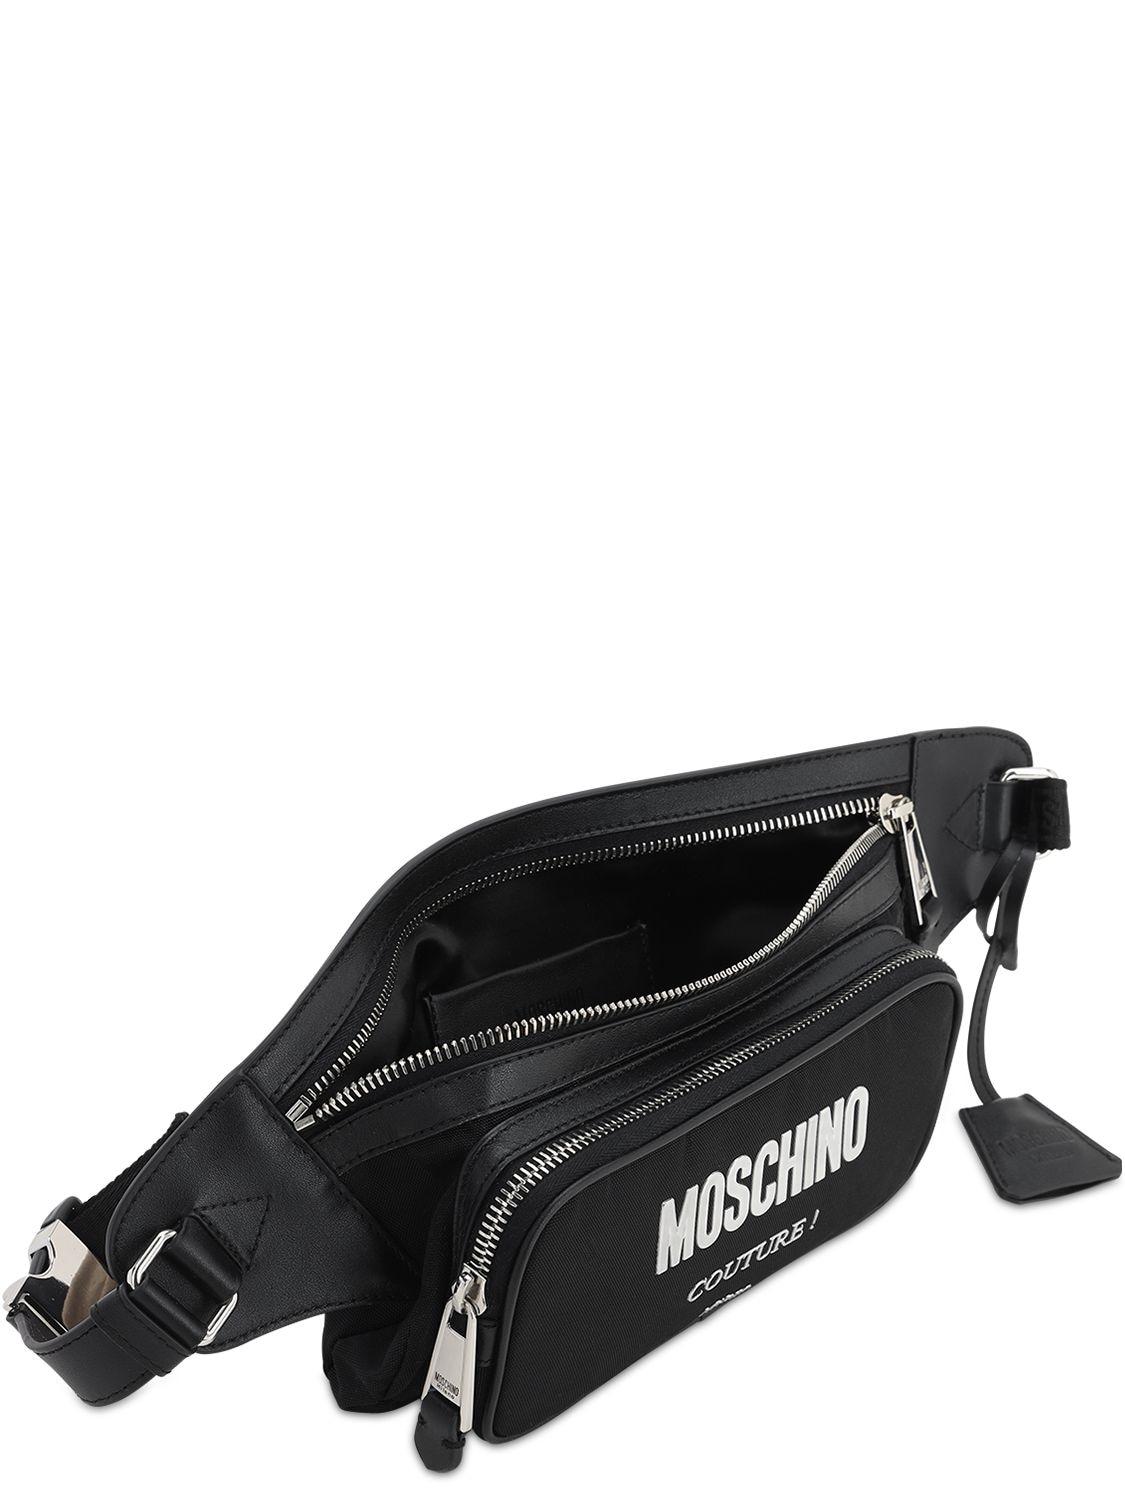 Moschino Logo Belt Bag in Black for Men - Lyst